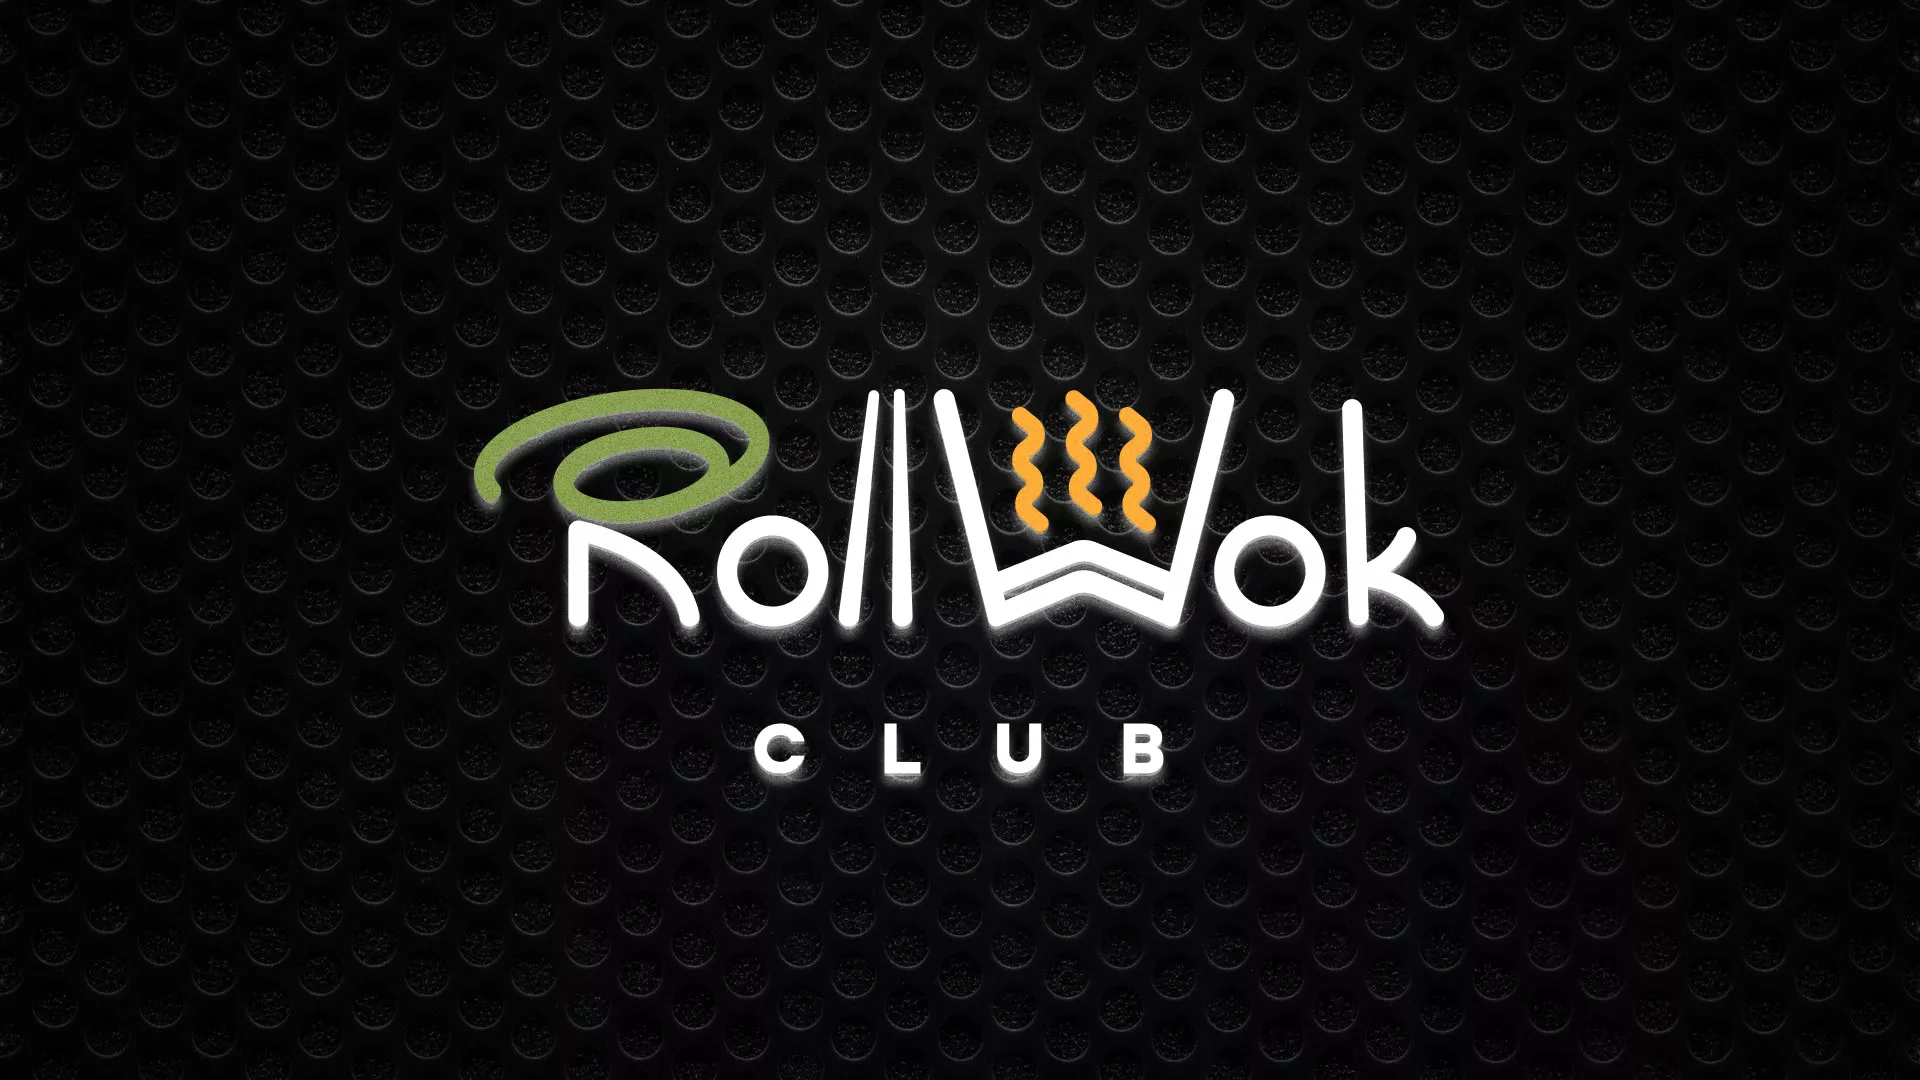 Брендирование торговых точек суши-бара «Roll Wok Club» в Новомосковске